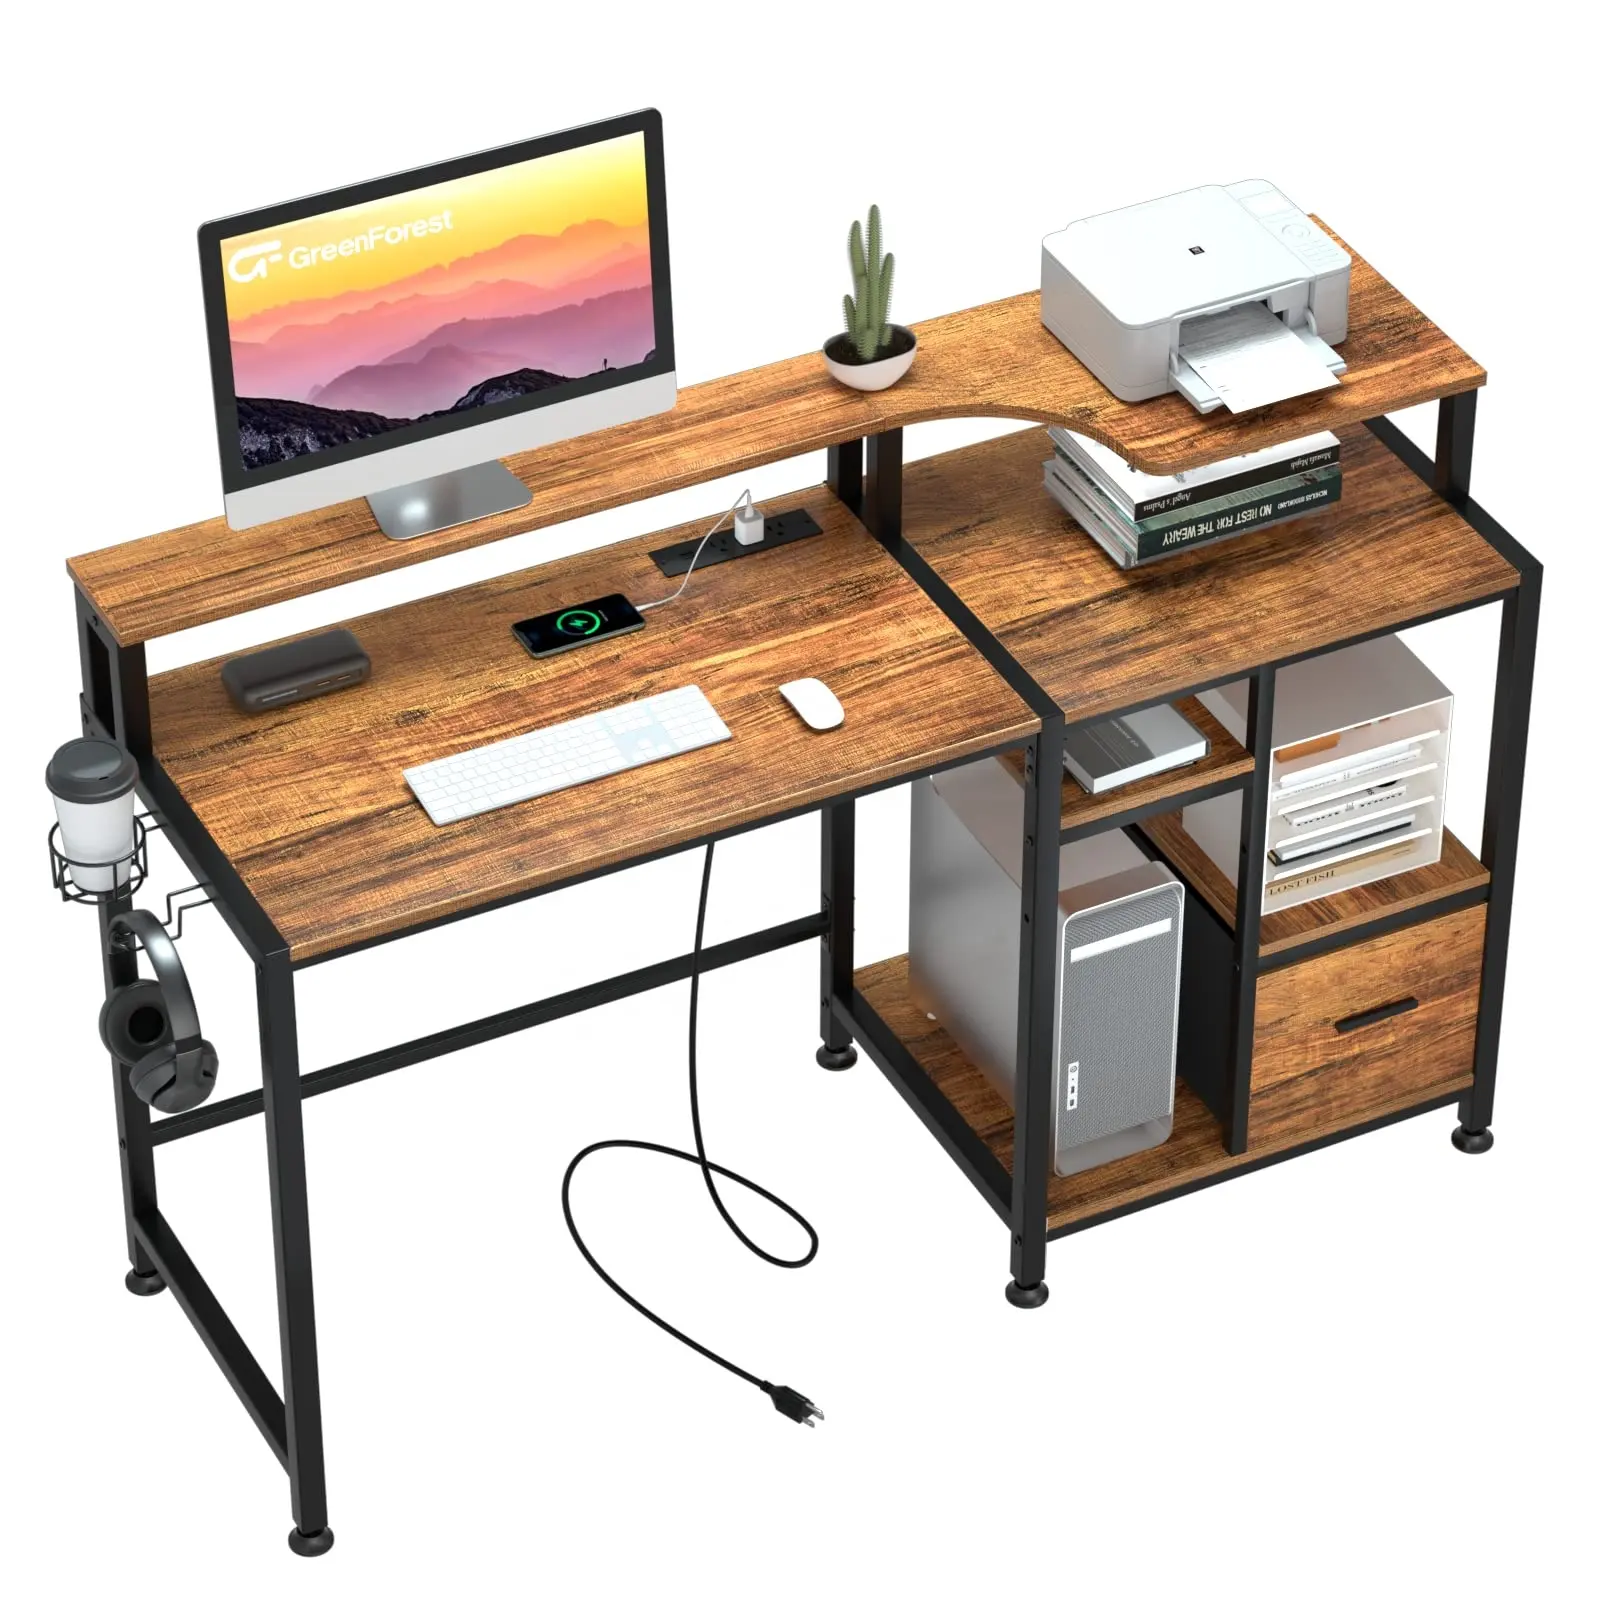 Bàn Máy tính văn phòng hiện đại với ngăn kéo và Trạm Sạc bằng gỗ bàn viết với máy in đứng và màn hình chủ